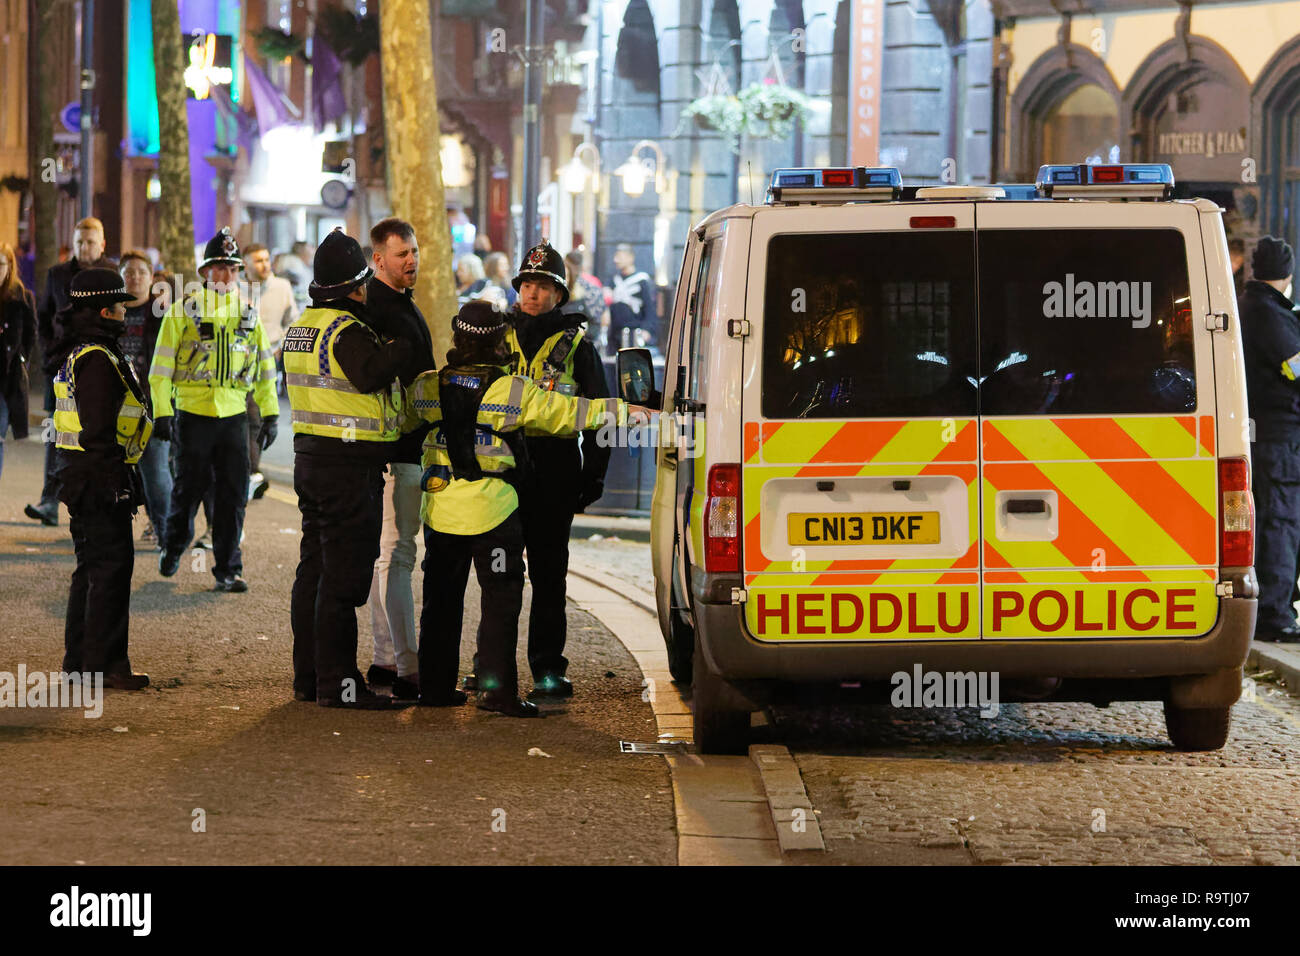 Nella foto: un uomo viene posto in stato di detenzione da funzionari di polizia. Venerdì 14 Dicembre 2018 Re: festaioli nel vento Street, Swansea, Wales, Regno Unito. Foto Stock